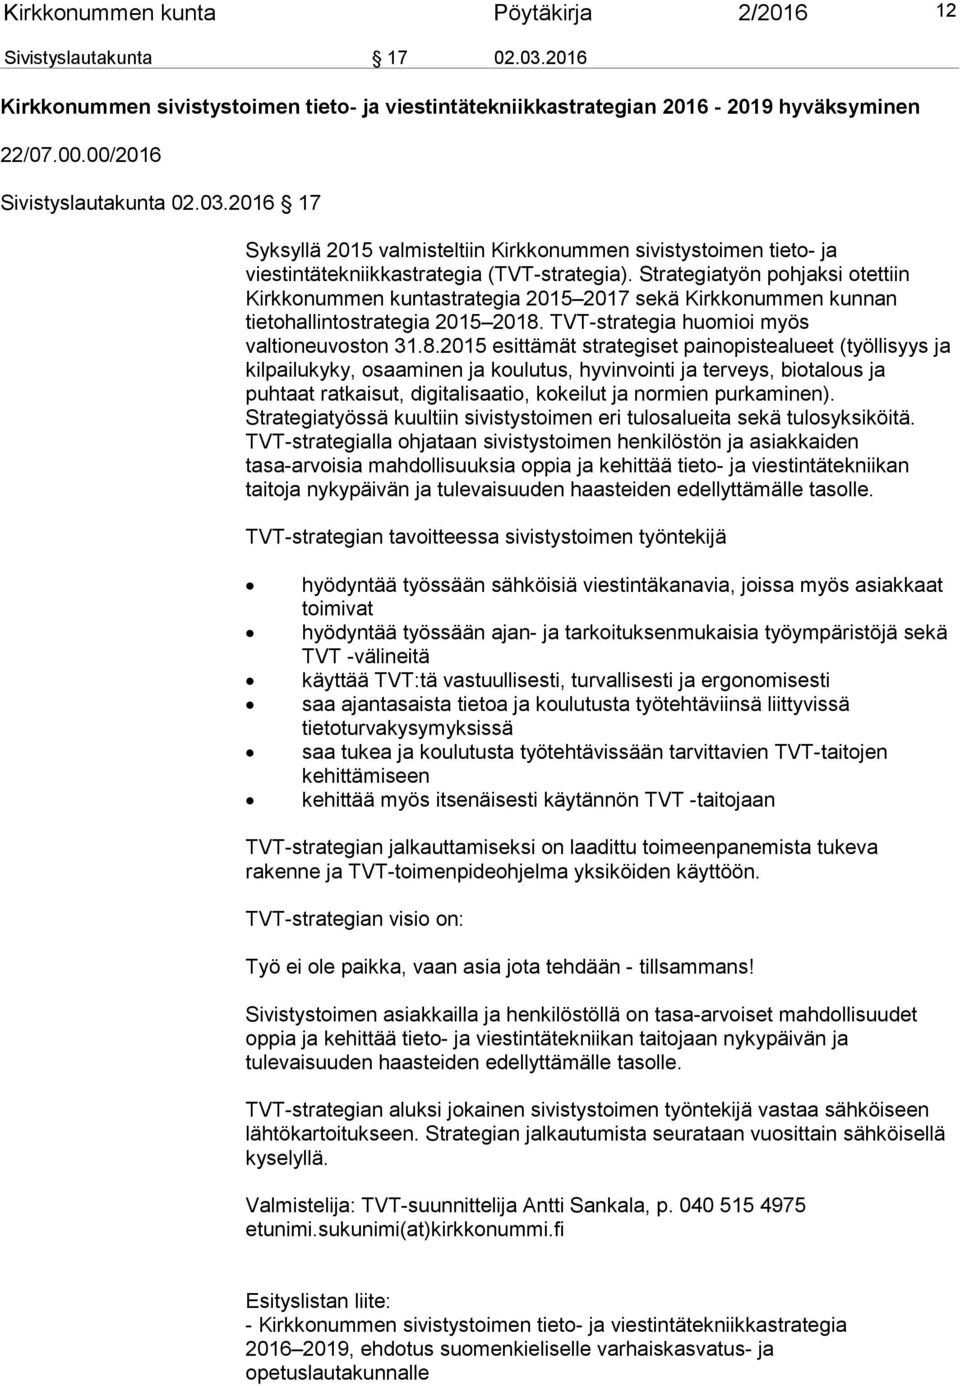 Strategiatyön pohjaksi otettiin Kirkkonummen kuntastrategia 2015 2017 sekä Kirkkonummen kunnan tietohallintostrategia 2015 2018.